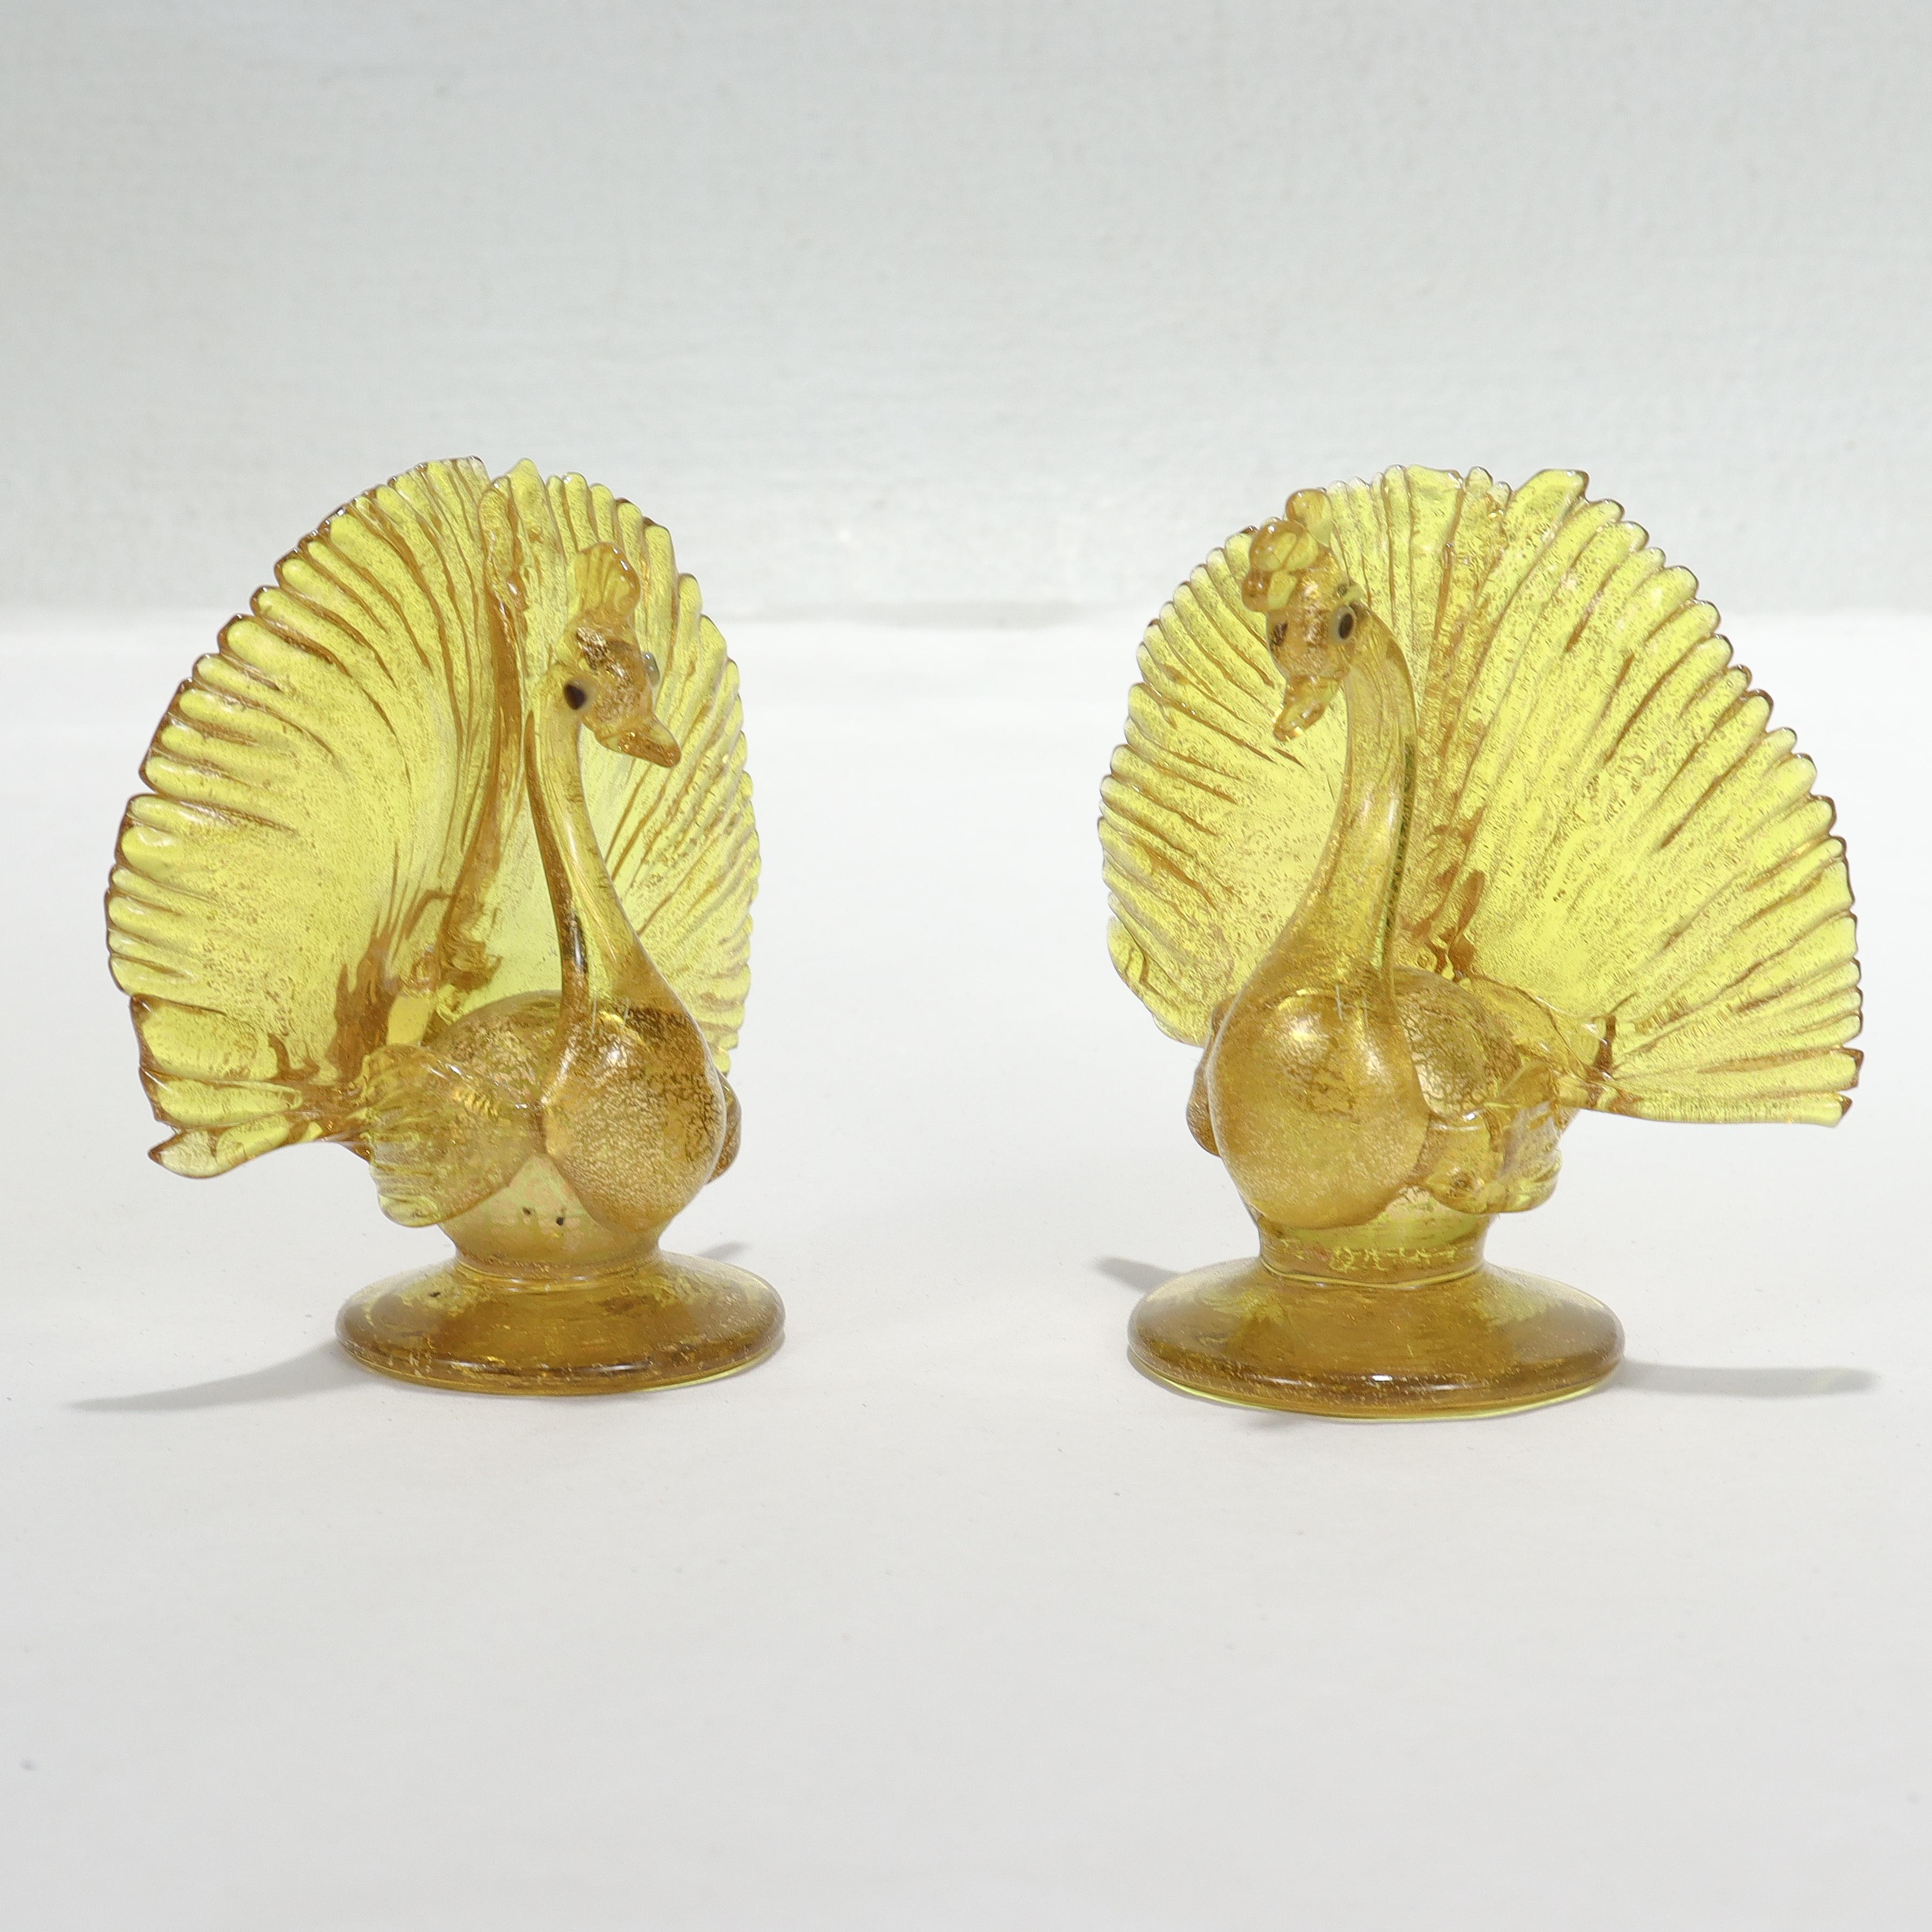 Ein schönes Paar venezianischer oder Murano-Glasfiguren oder Tischkartenhalter.

In Form von Pfauen aus gelbem Glas mit Goldfolie mit dunkelblauen Augen.

Wird Salviati zugeschrieben.

Einfach ein wunderschönes Paar Pfauen aus venezianischem oder